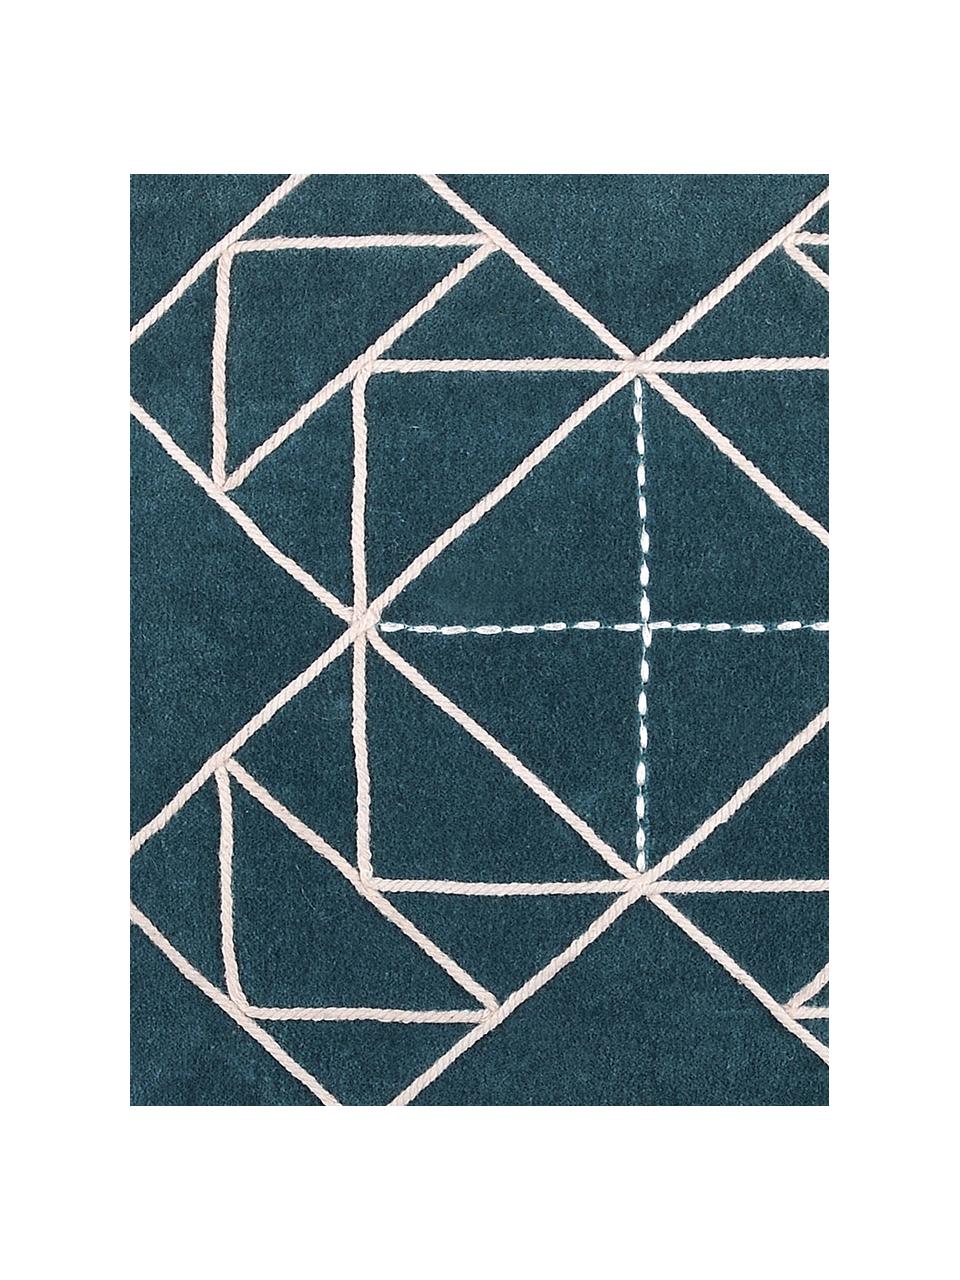 Kissen Niro mit graphischem Muster, mit Inlett, Bezug: 100% Baumwolle, Petrolblau, Weiß, 40 x 40 cm